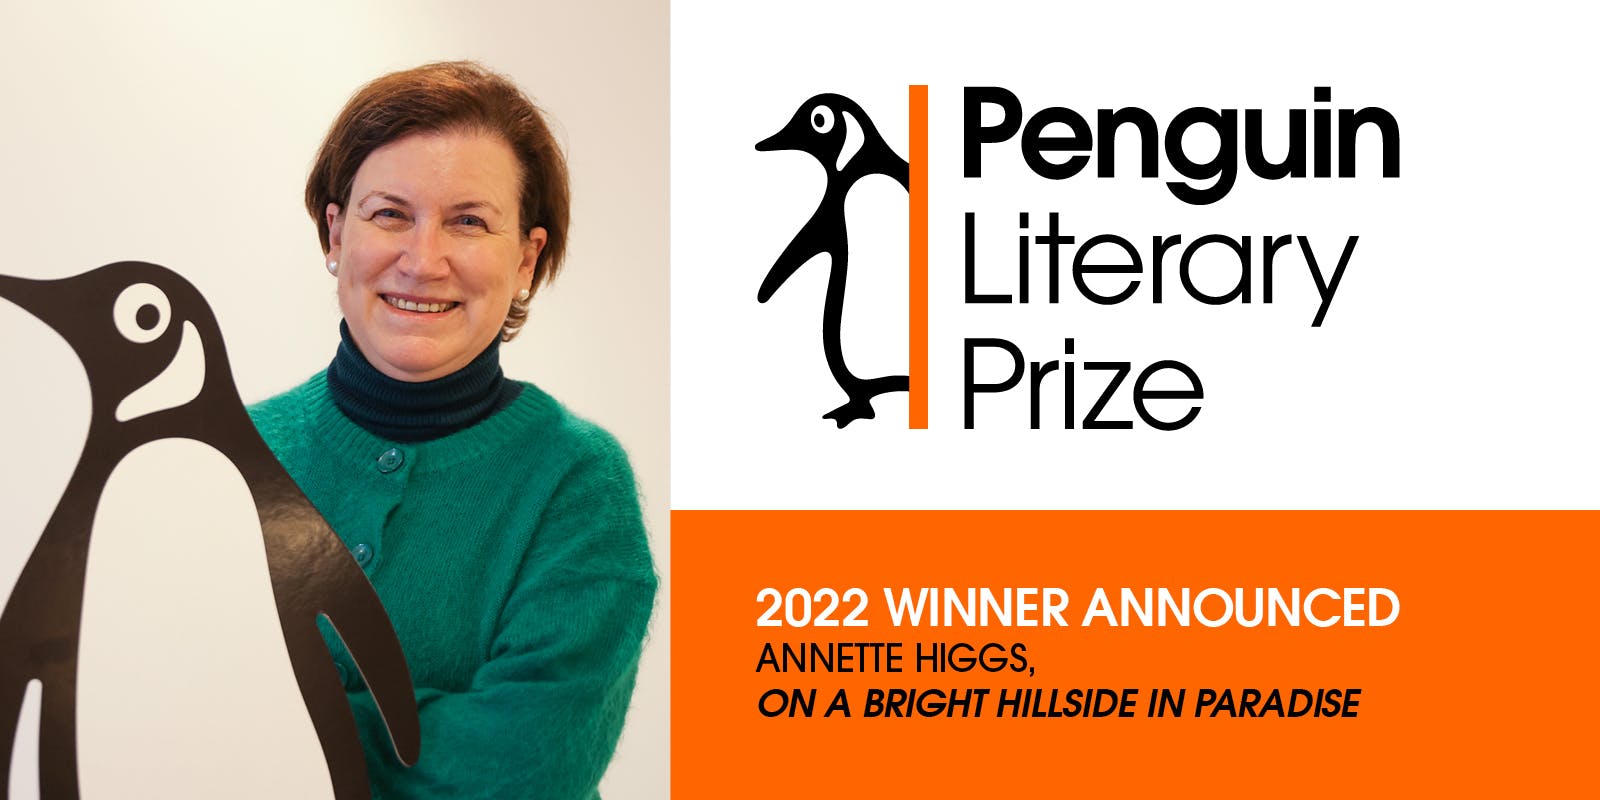 Penguin Literary Prize 2022 Winner Announced